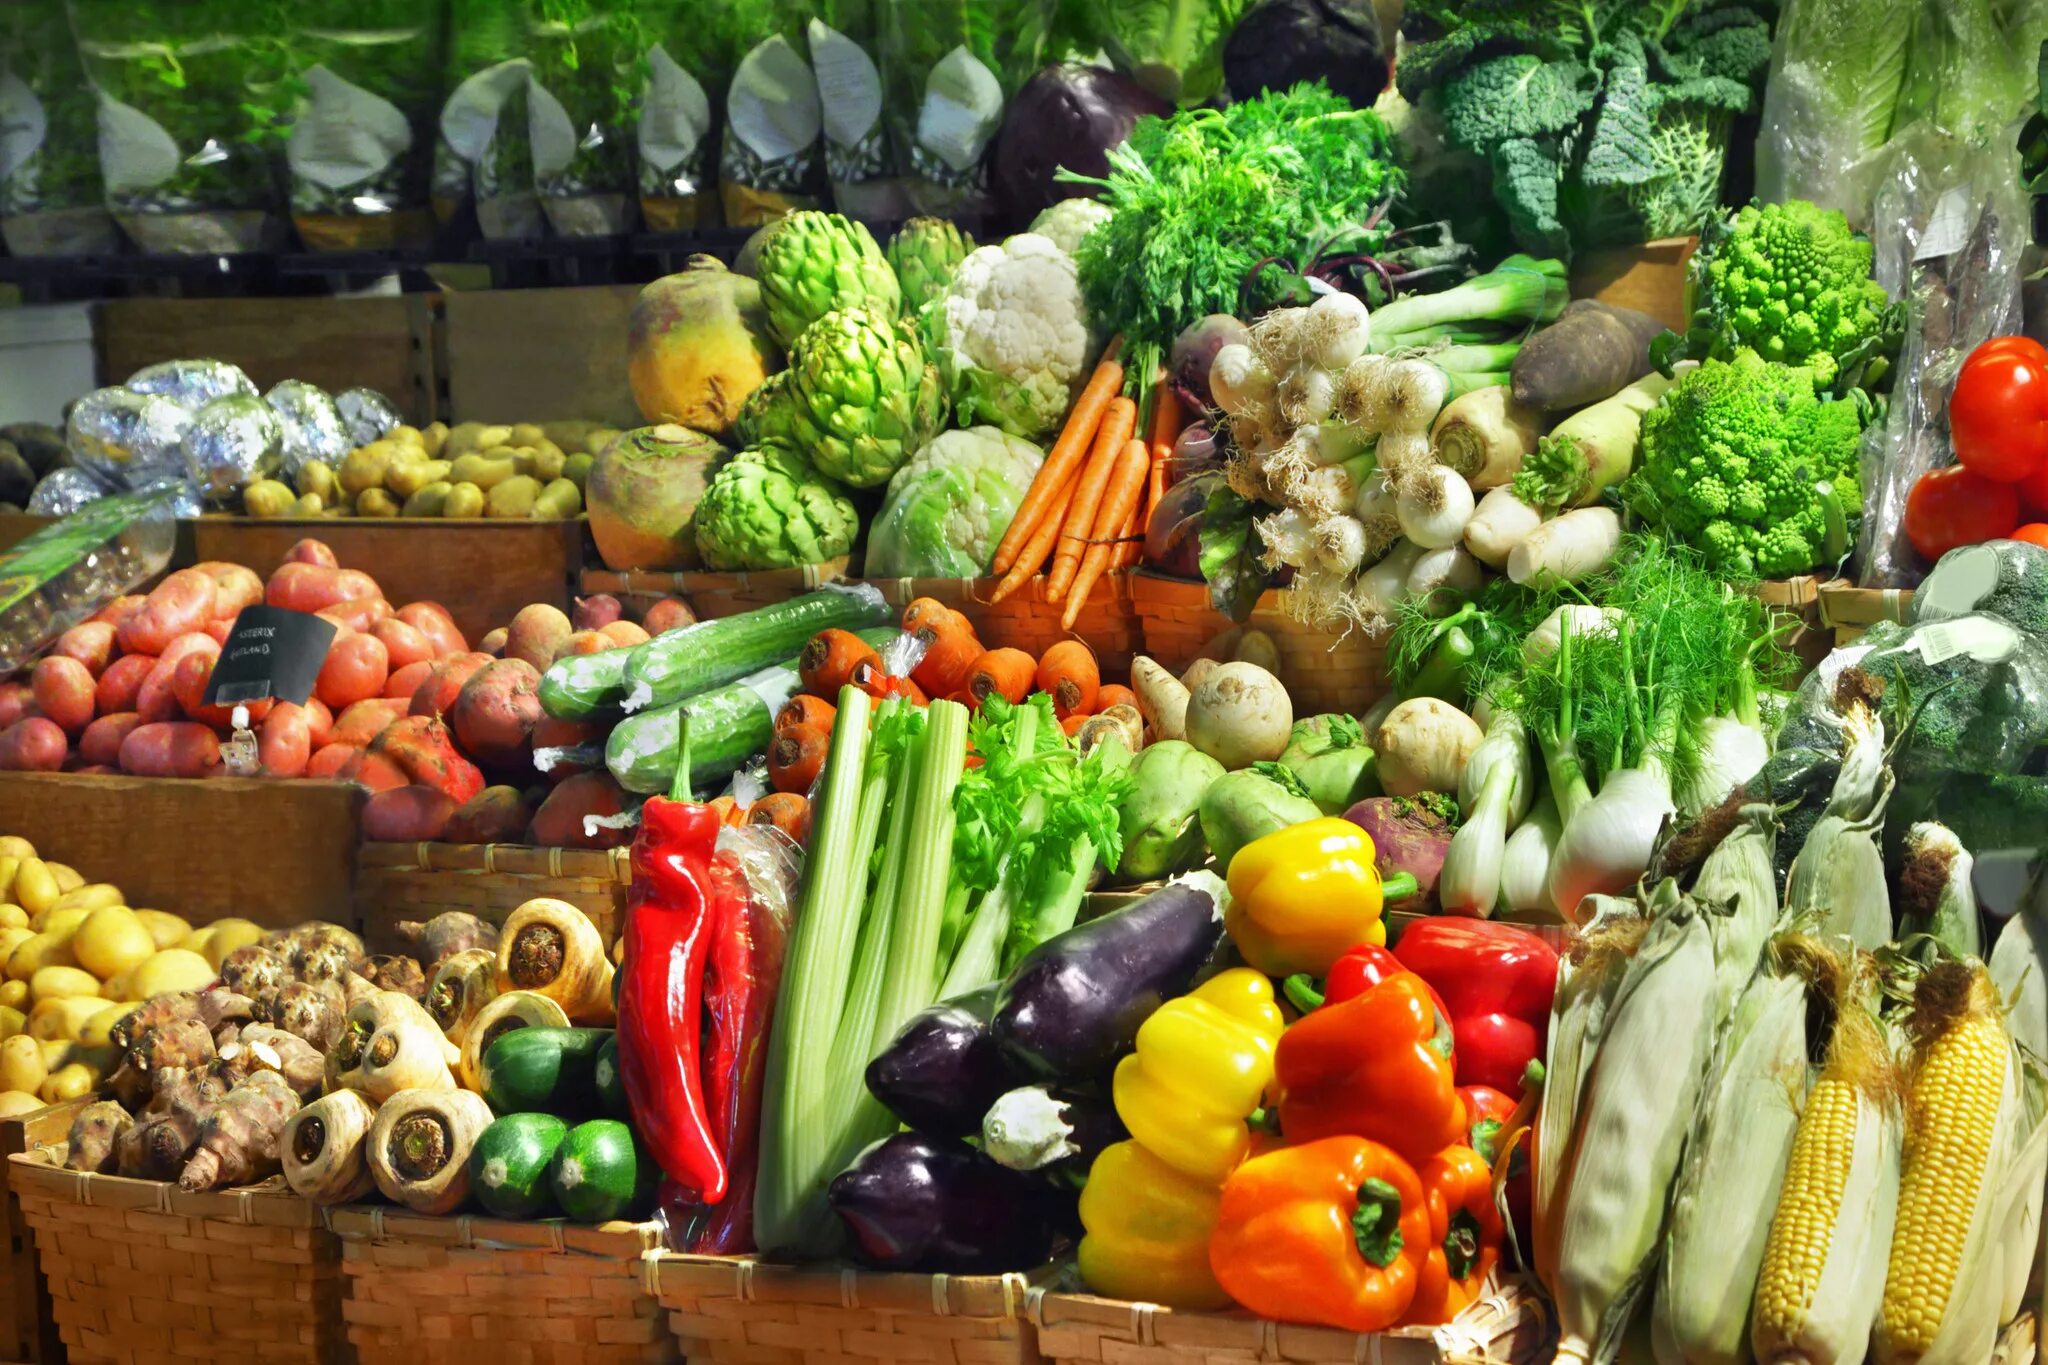 Vegetables shop. Овощи и фрукты. Овощи на прилавке. Прилавок с овощами и фруктами. Овощи на рынке.